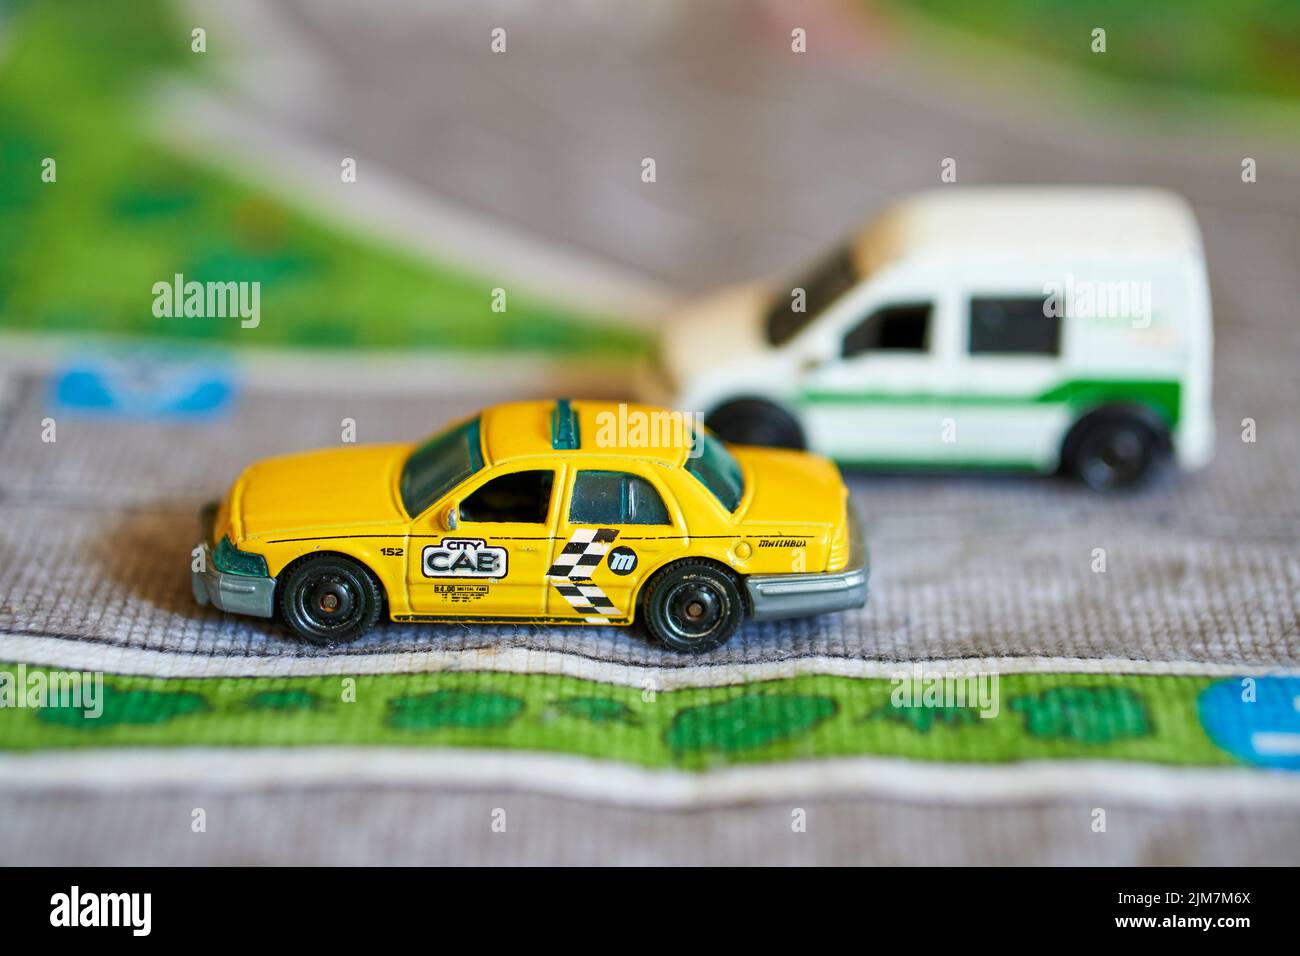 Ein Mattel Matchbox-Modell-Taxi-Auto auf einer Spielmatte Stockfoto